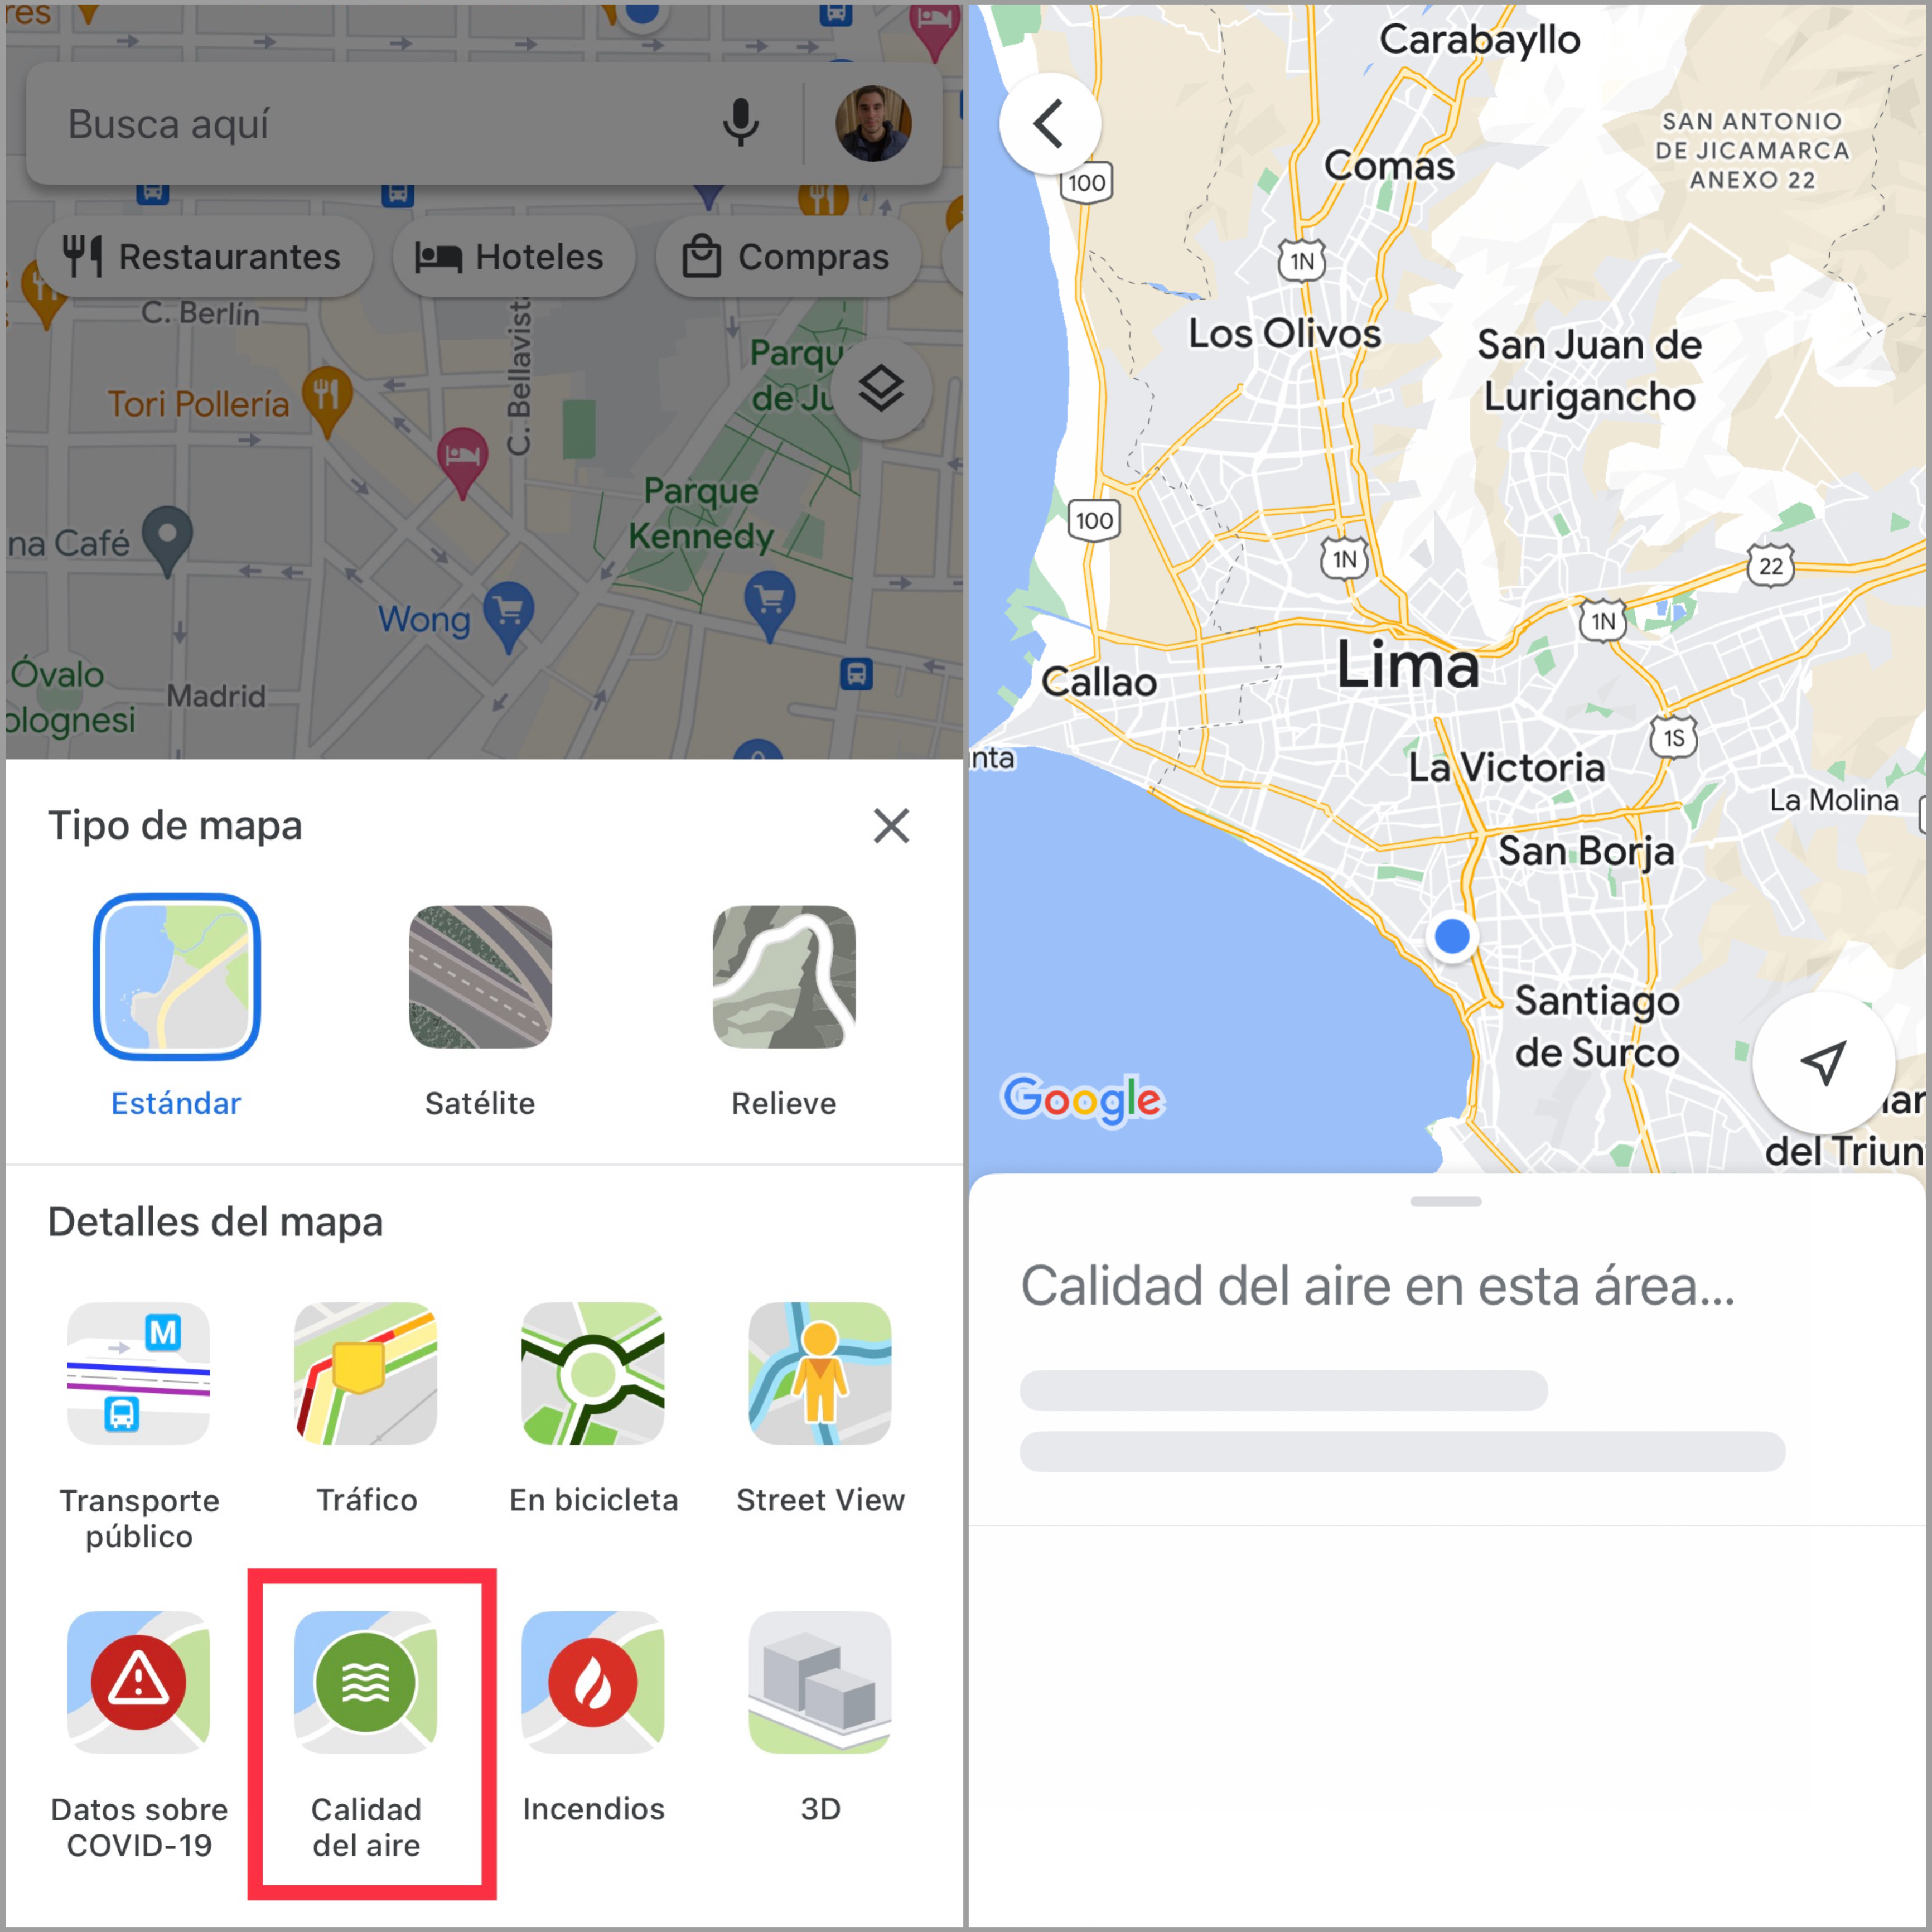 Nueva opción de Google Maps permite saber el nivel de contaminación en el aire, pero aún no está funcionando en la mayoría de países en Latinoamérica. (foto: iPhone/Jose Arana)